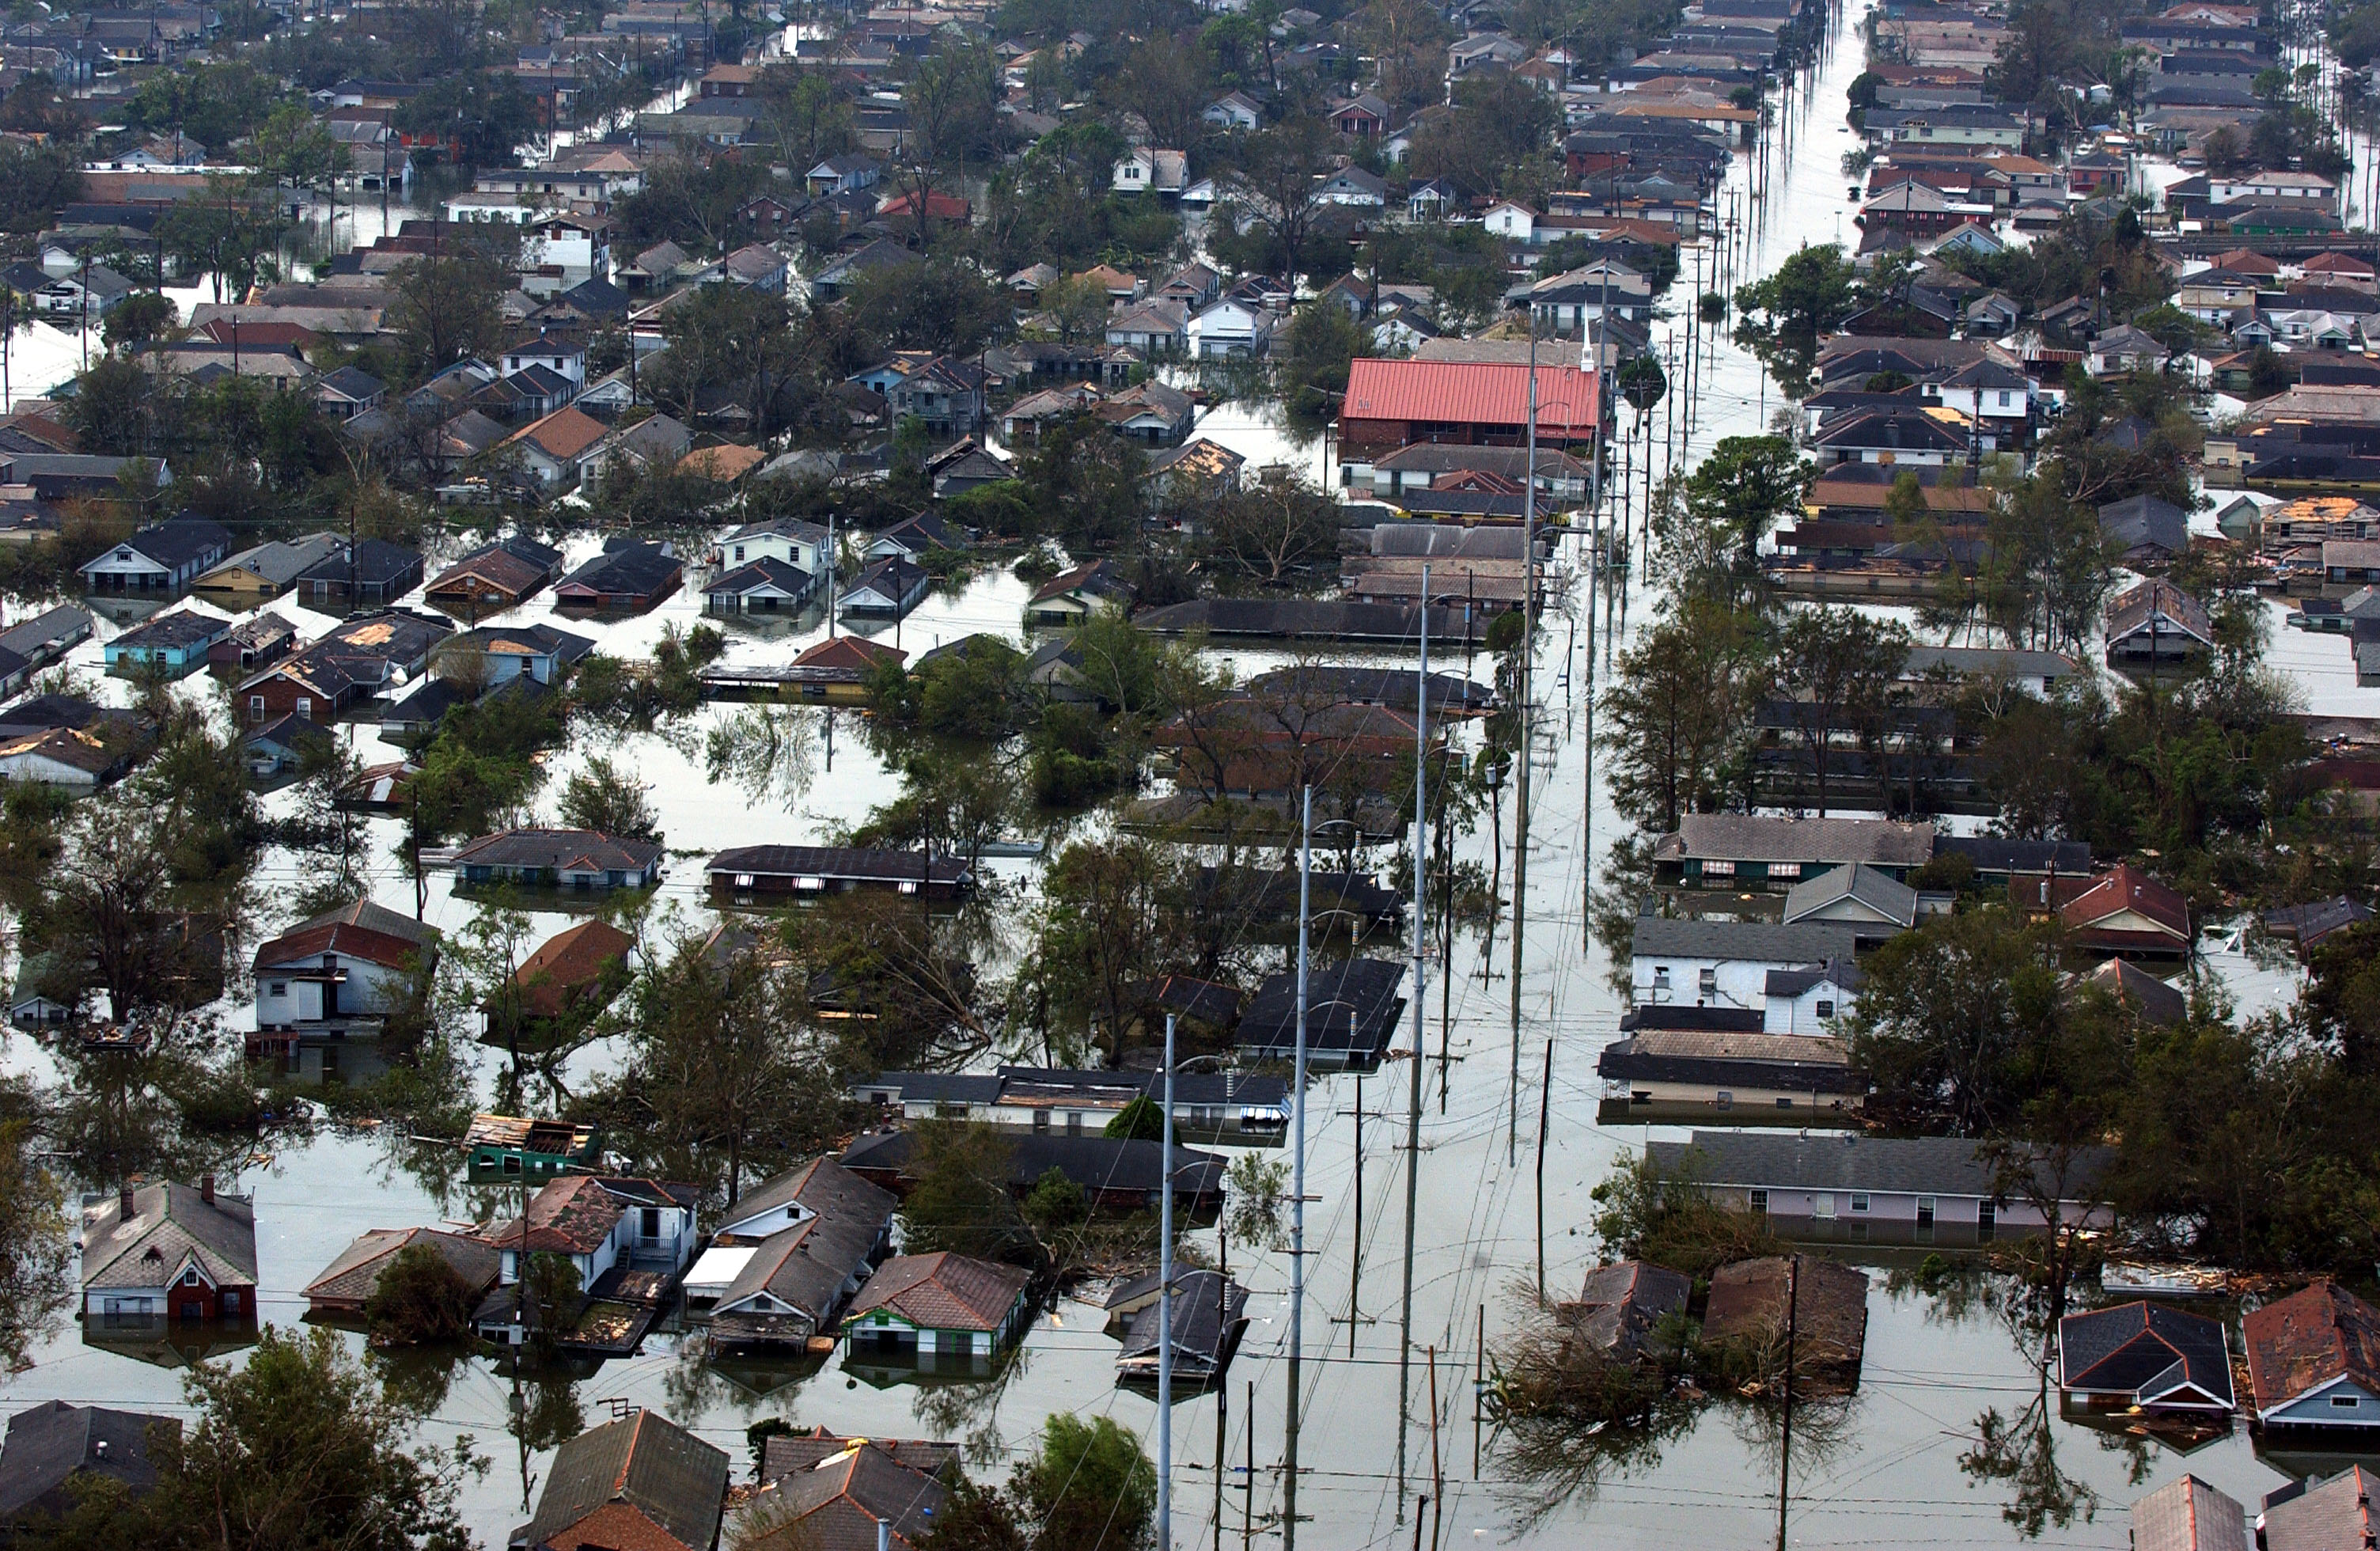 FEMA - 14983 - Photograph by Jocelyn Augustino taken on 08-30-2005 in Louisiana